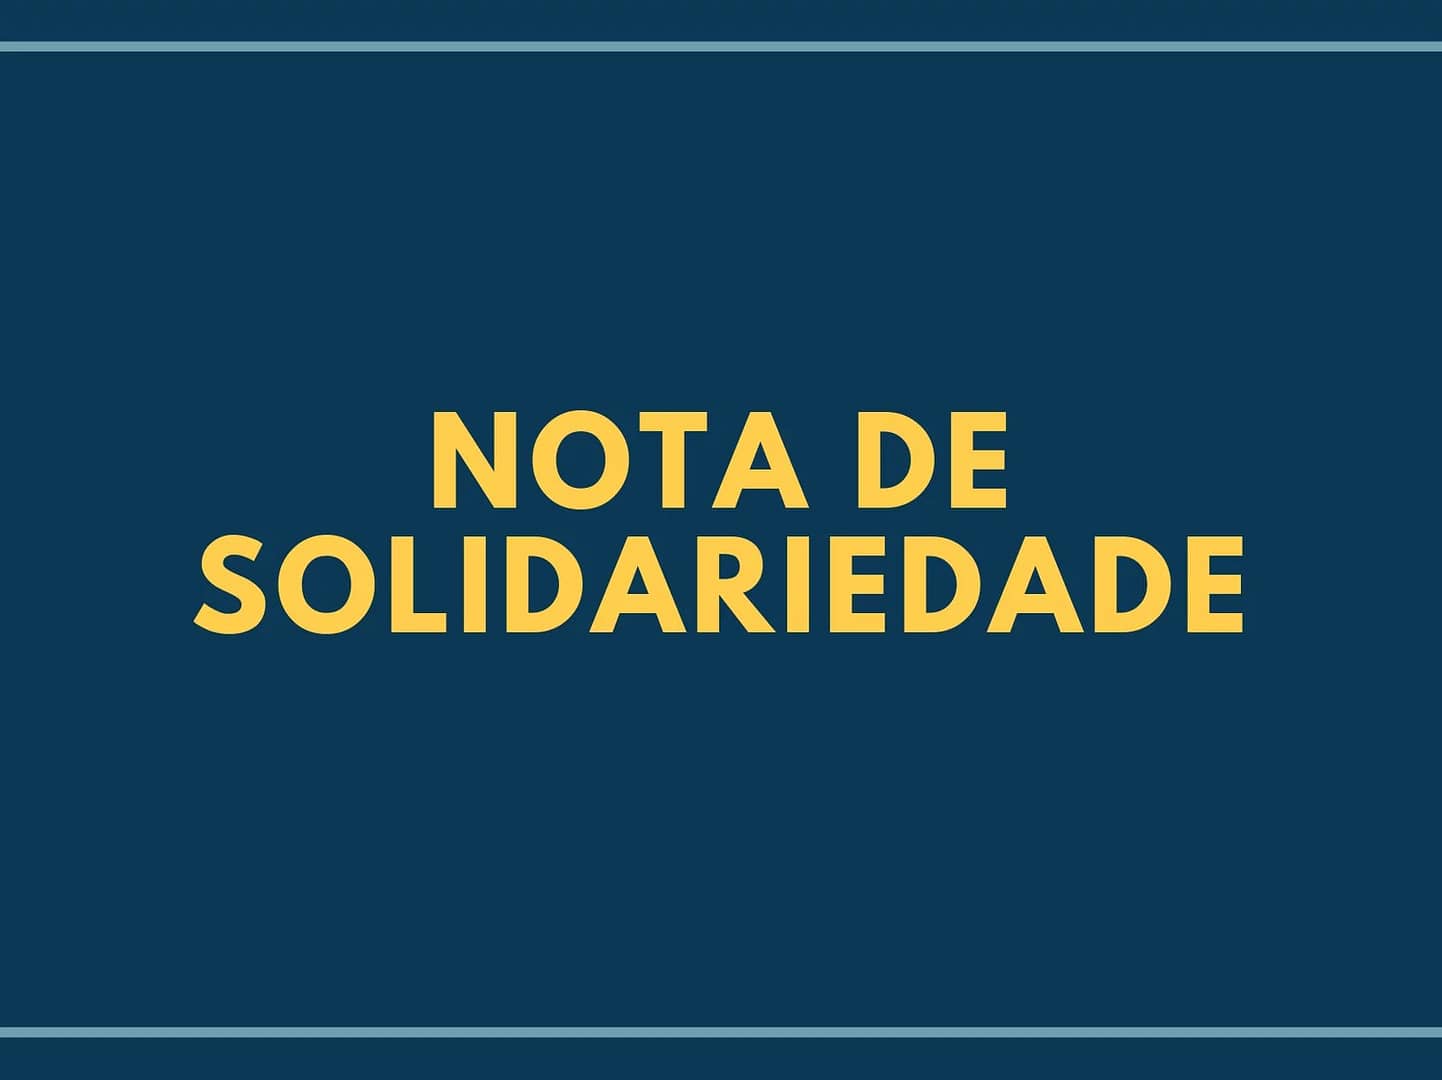 nota-de-solidariedade-sindojus-ceara-e1630952926259